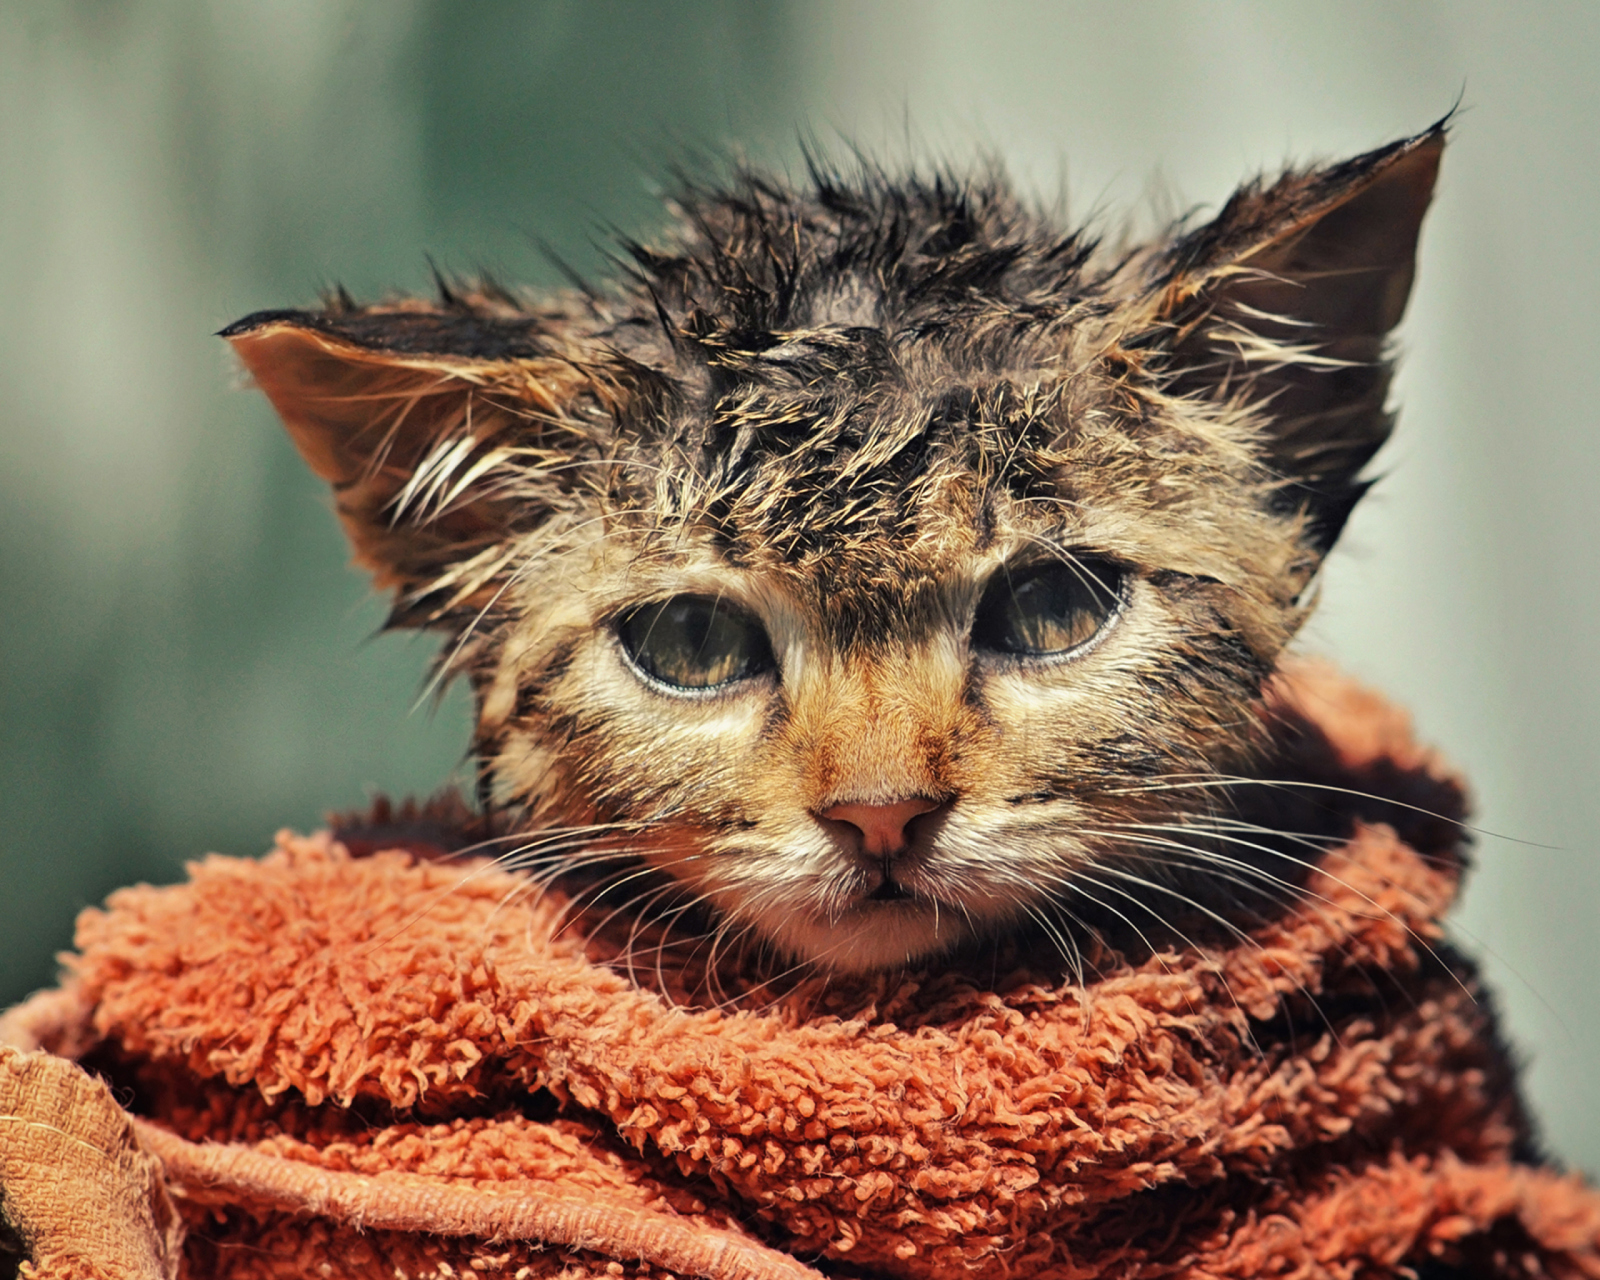 Cute Wet Kitty Cat After Having Shower wallpaper 1600x1280